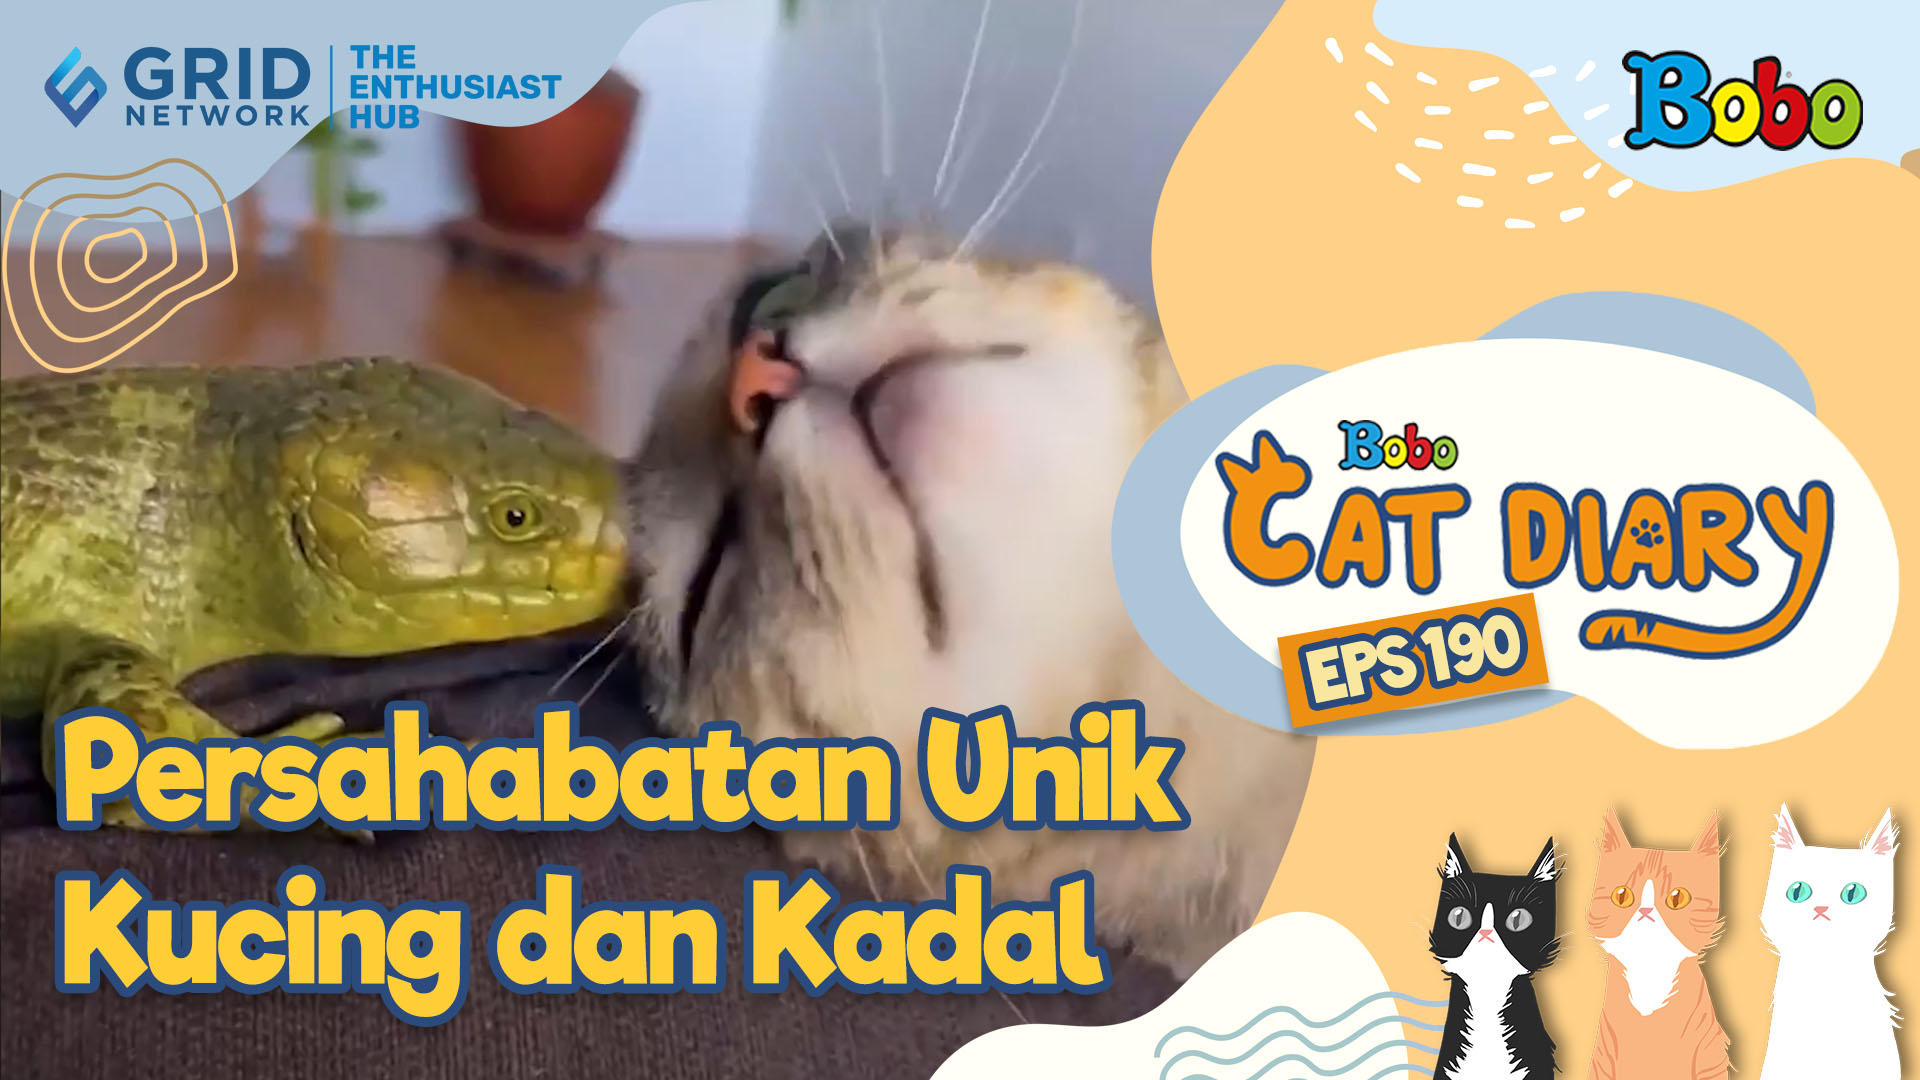 Kucing Lucu - Persahabatan Unik Kucing dan Kadal - Bobo Cat Diary Eps 190